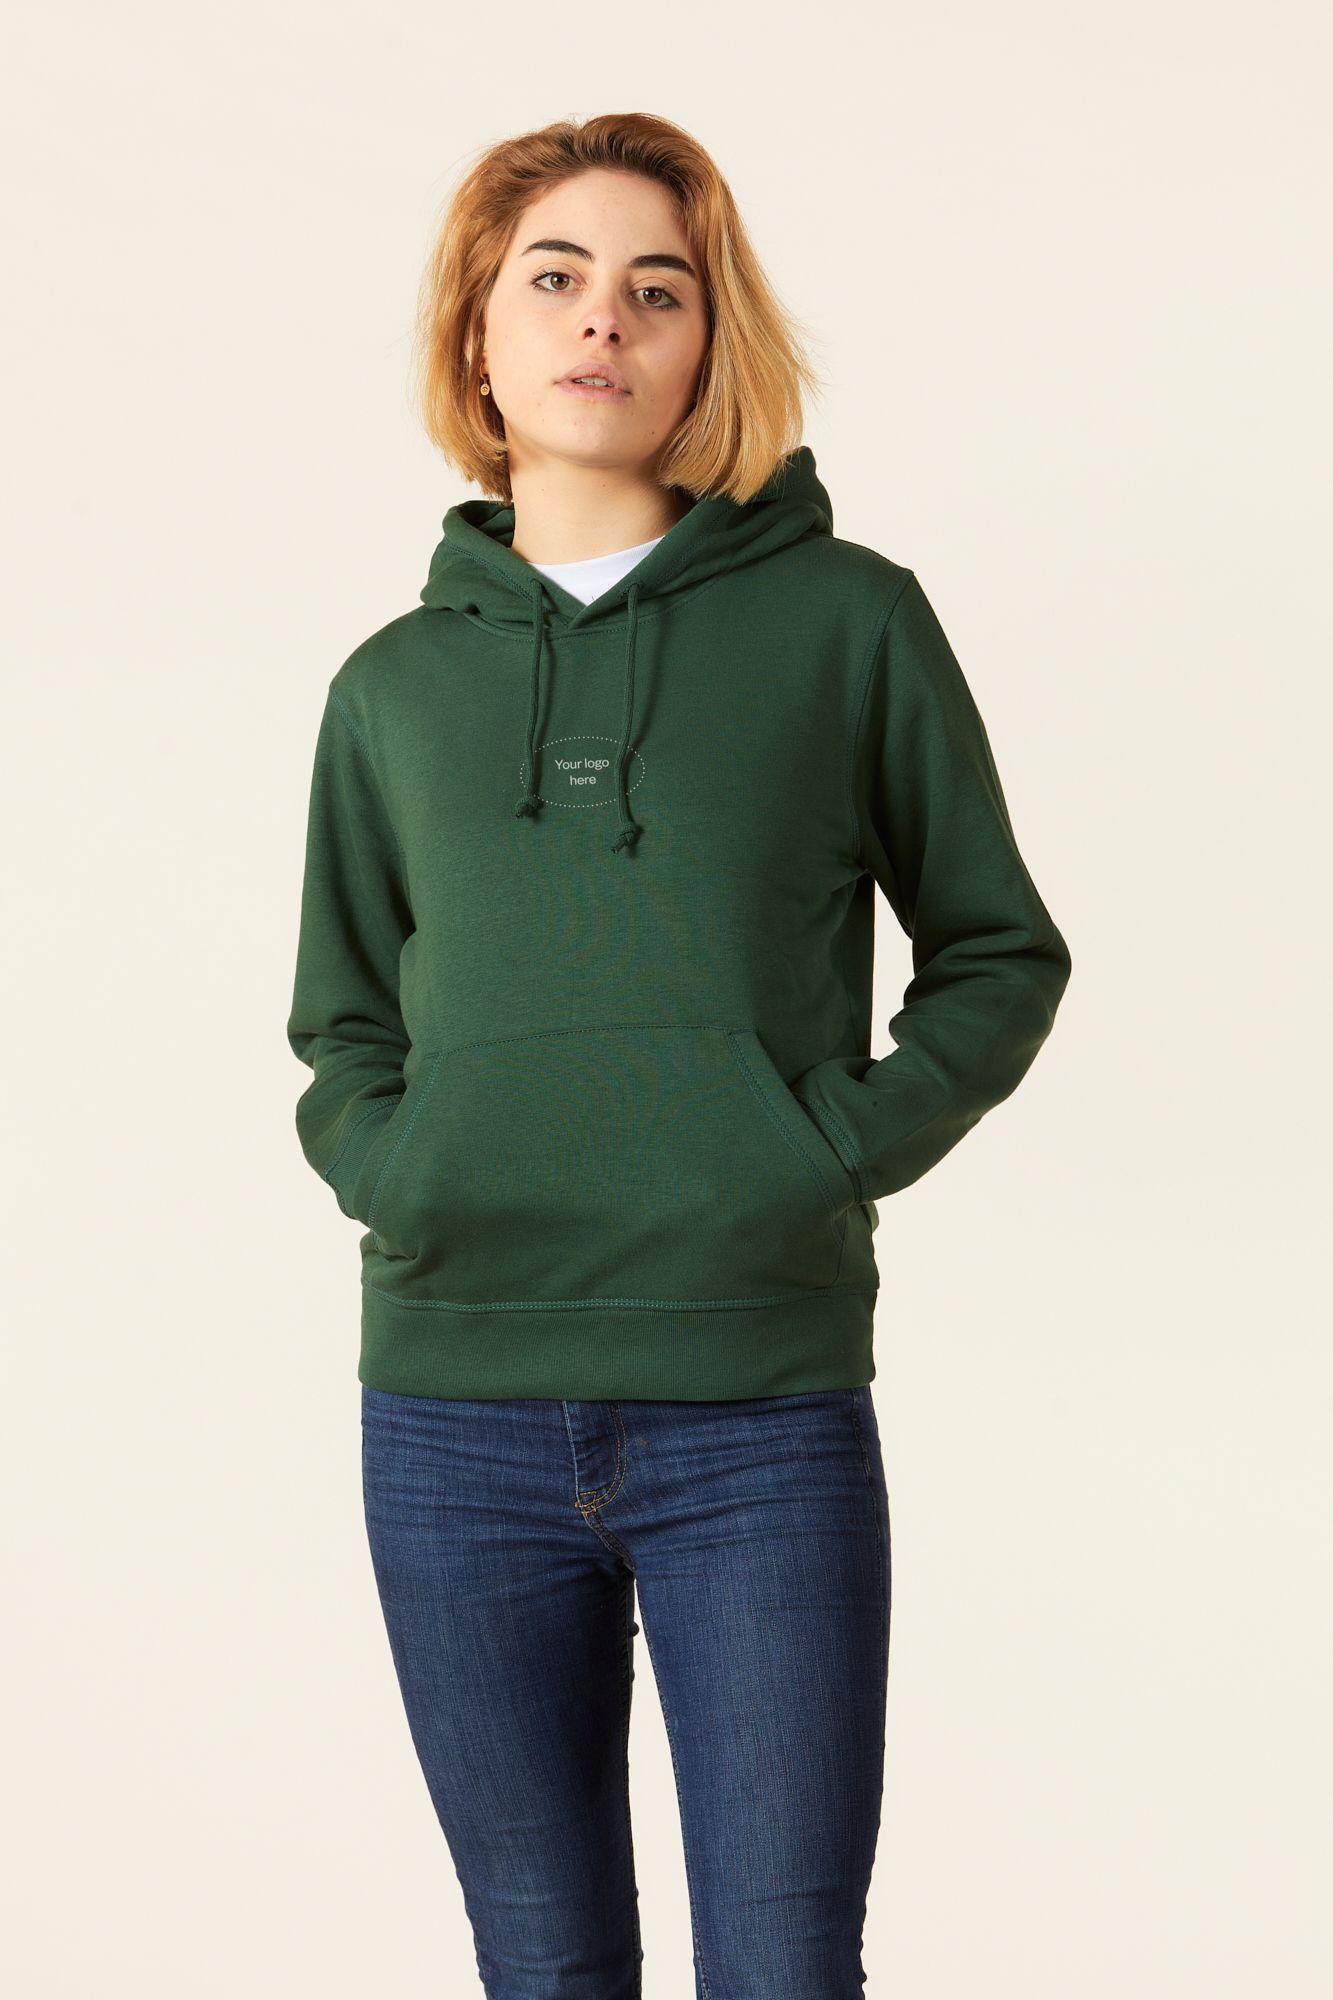 Personalised eco-friendly light hoodie